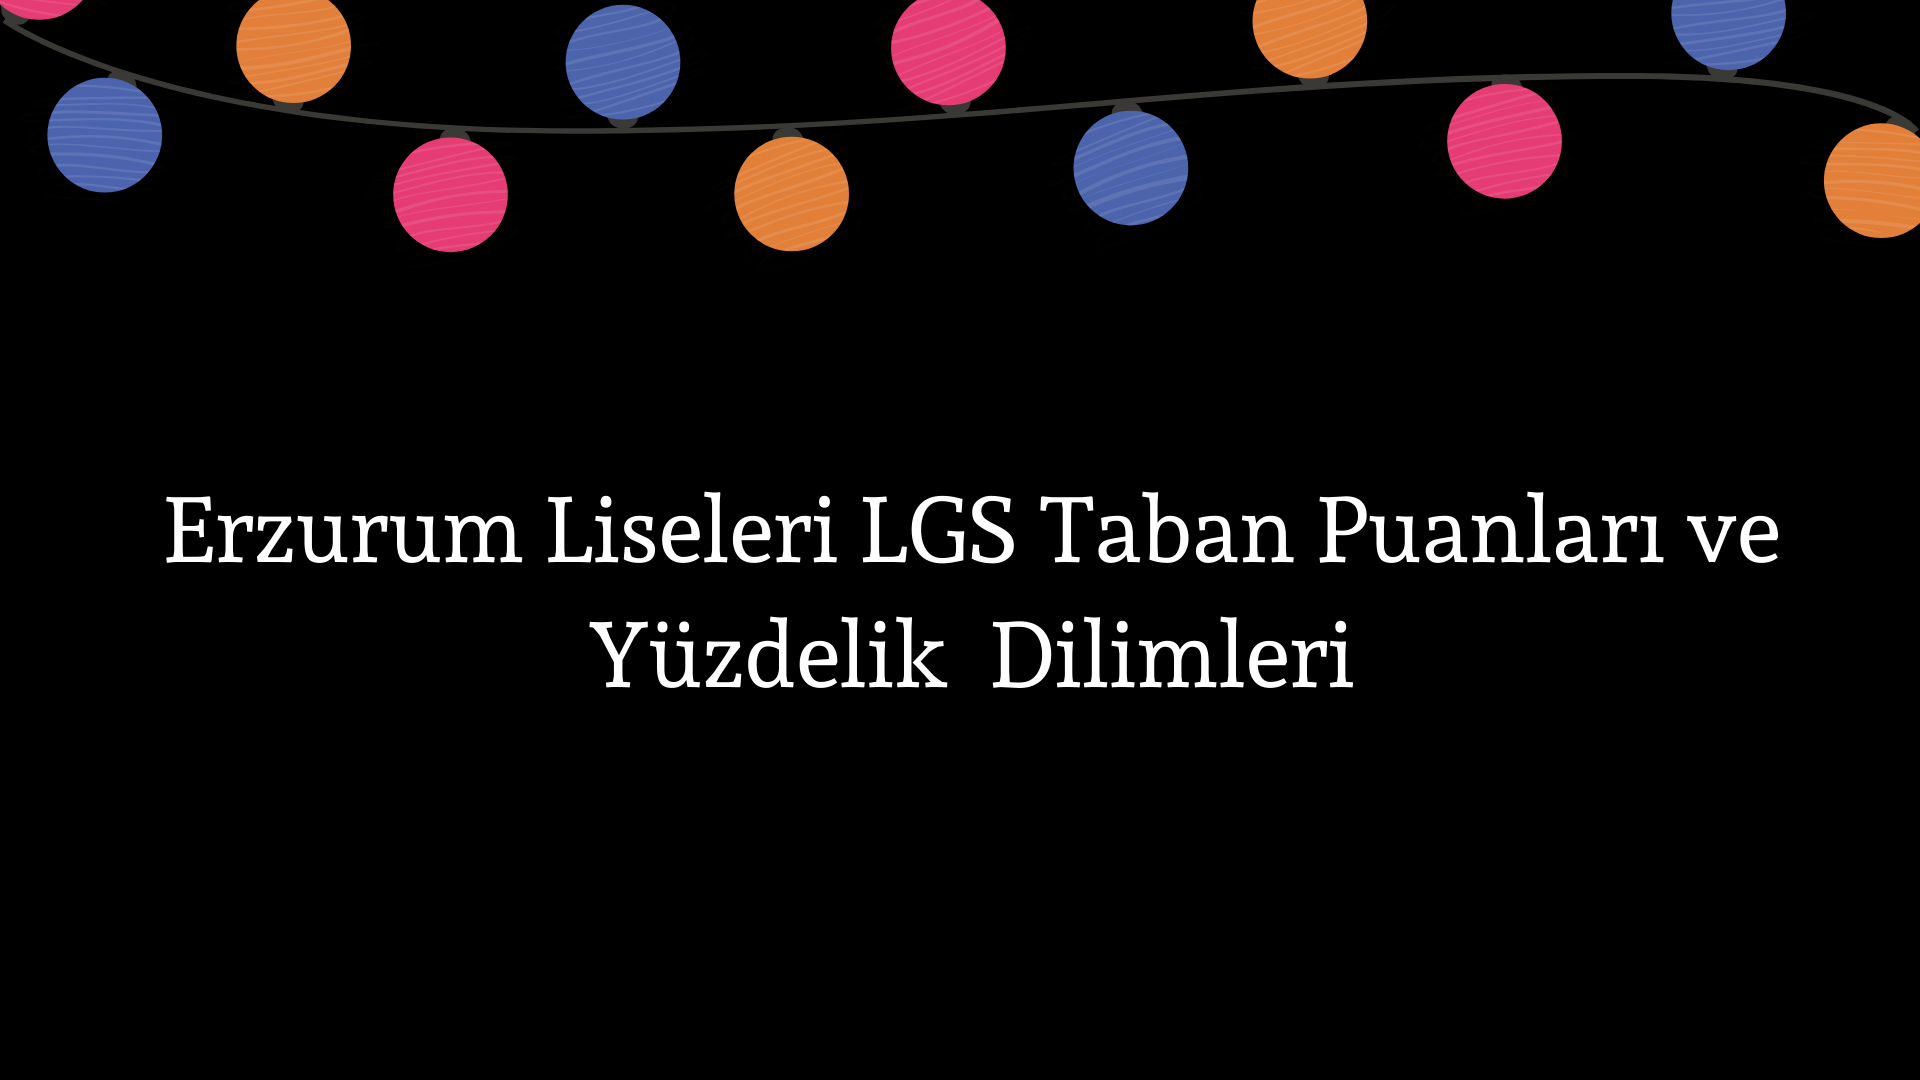 Erzurum Liseleri Taban Puanları ve Yüzdelik Dilimleri LGS-MEB 2022